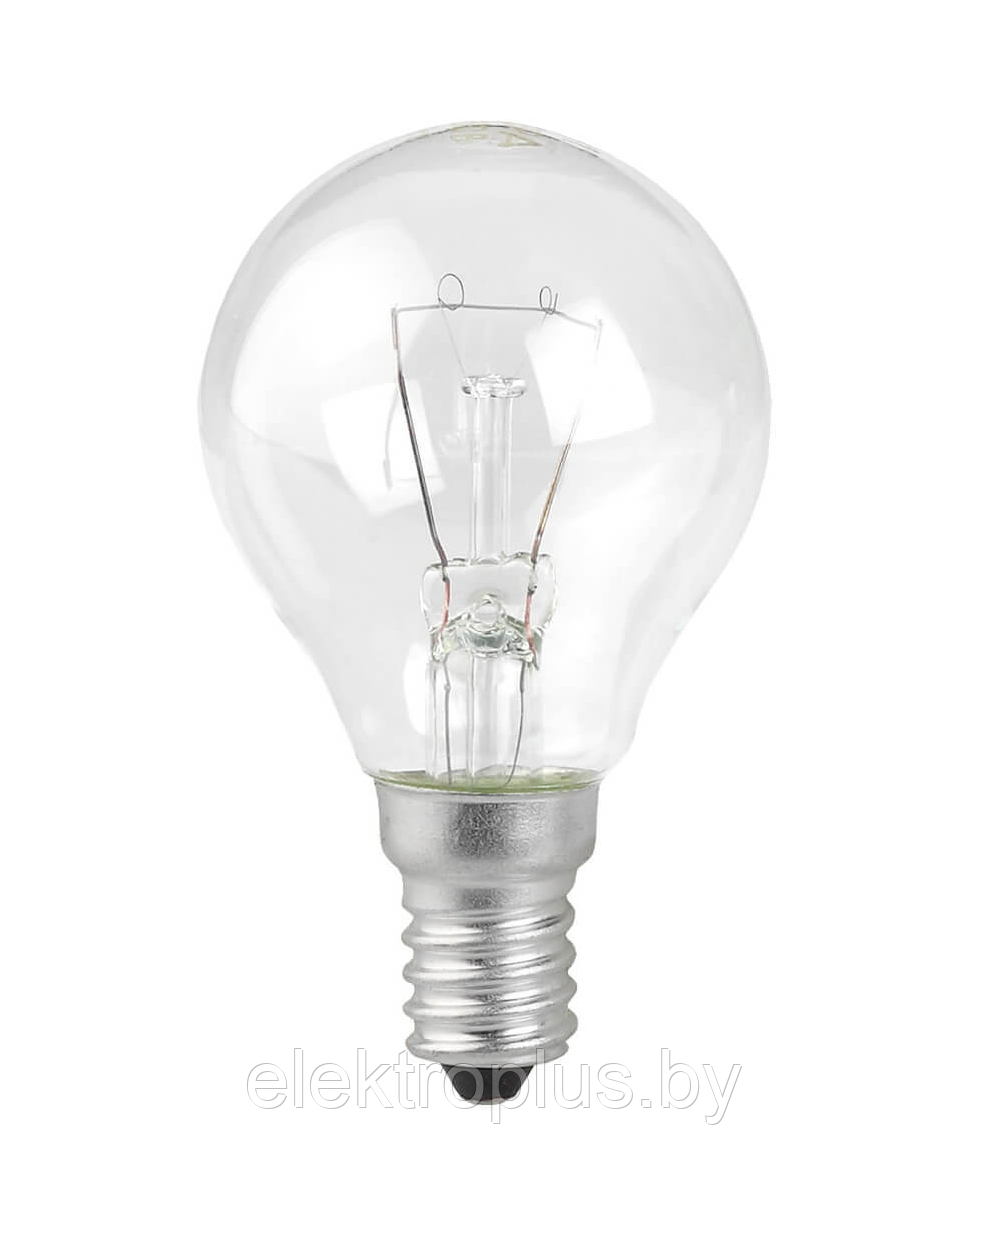 Лампа накаливания общего назначения 100 Вт цоколь E14